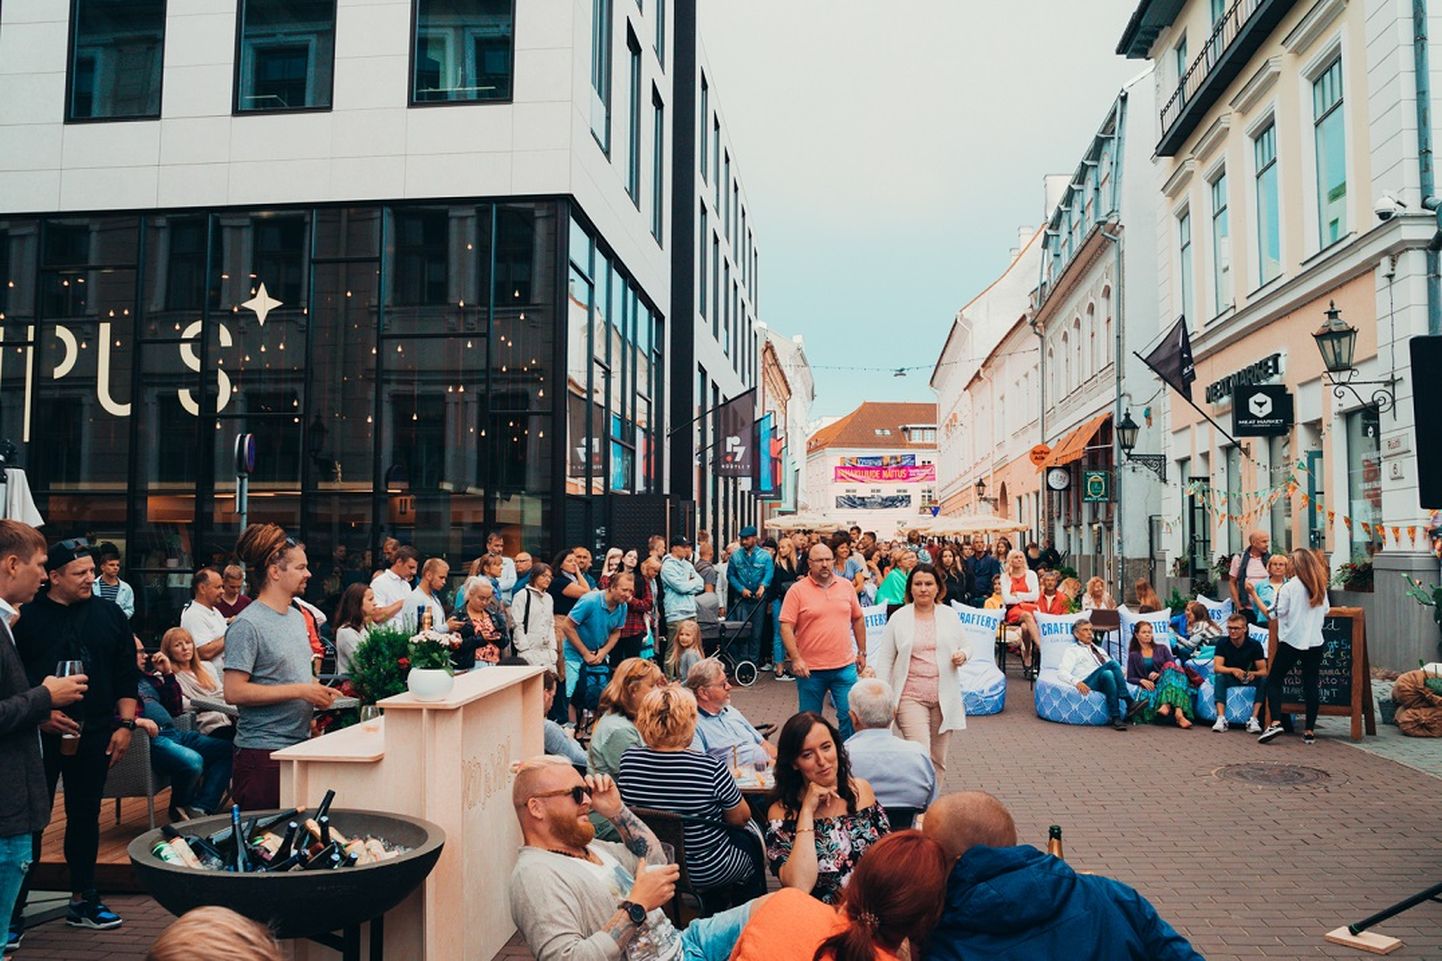 Viis Rüütli ja Küütri tänava ristis asuvat toidukohta lõid juulis omavahel punti, et tuua külastajateni mõnus meelelahutusprogramm ja maitseelamused.